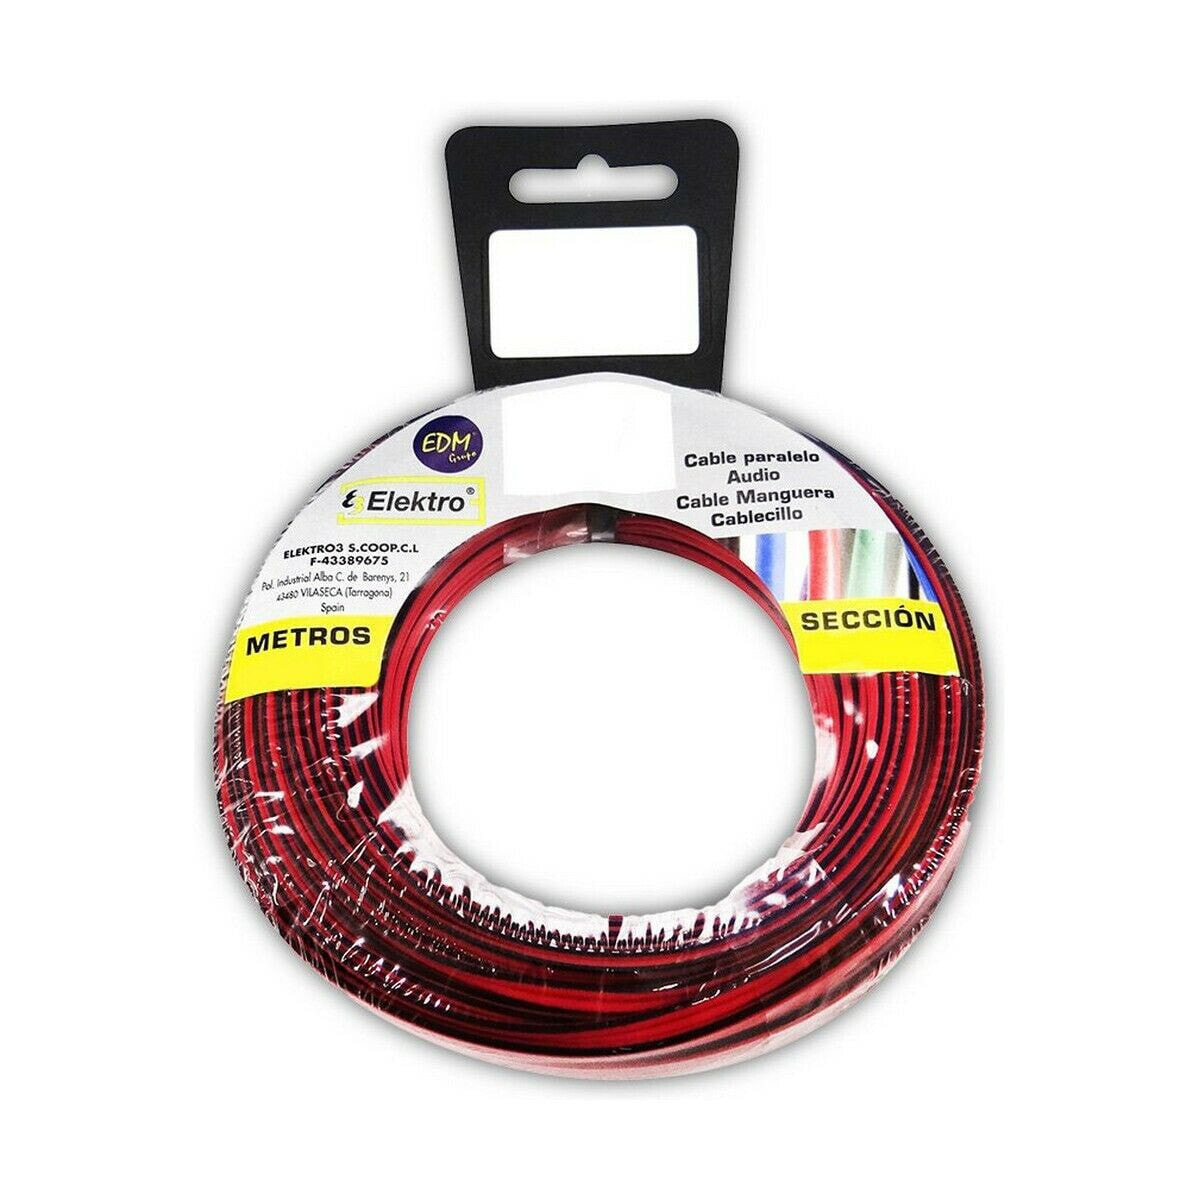 Аудио кабель EDM 2 x 0,75 mm Красный/Черный 25 m